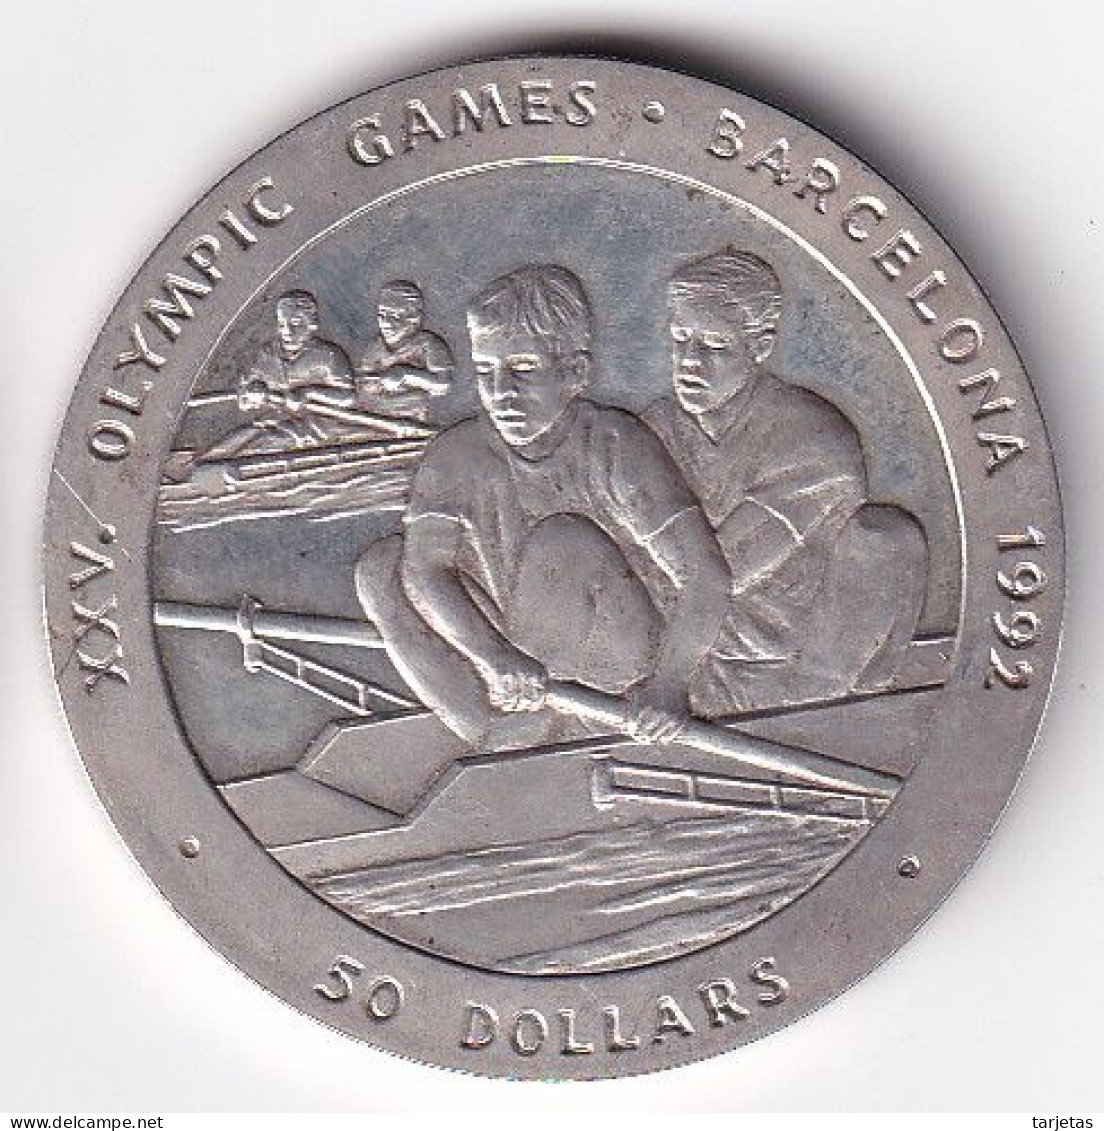 MONEDA DE PLATA DE NIUE DE 50 DOLLARS DEL AÑO 1989 SILVER-ARGENT (BARCELONA 1992 OLIMPIADA) - Niue